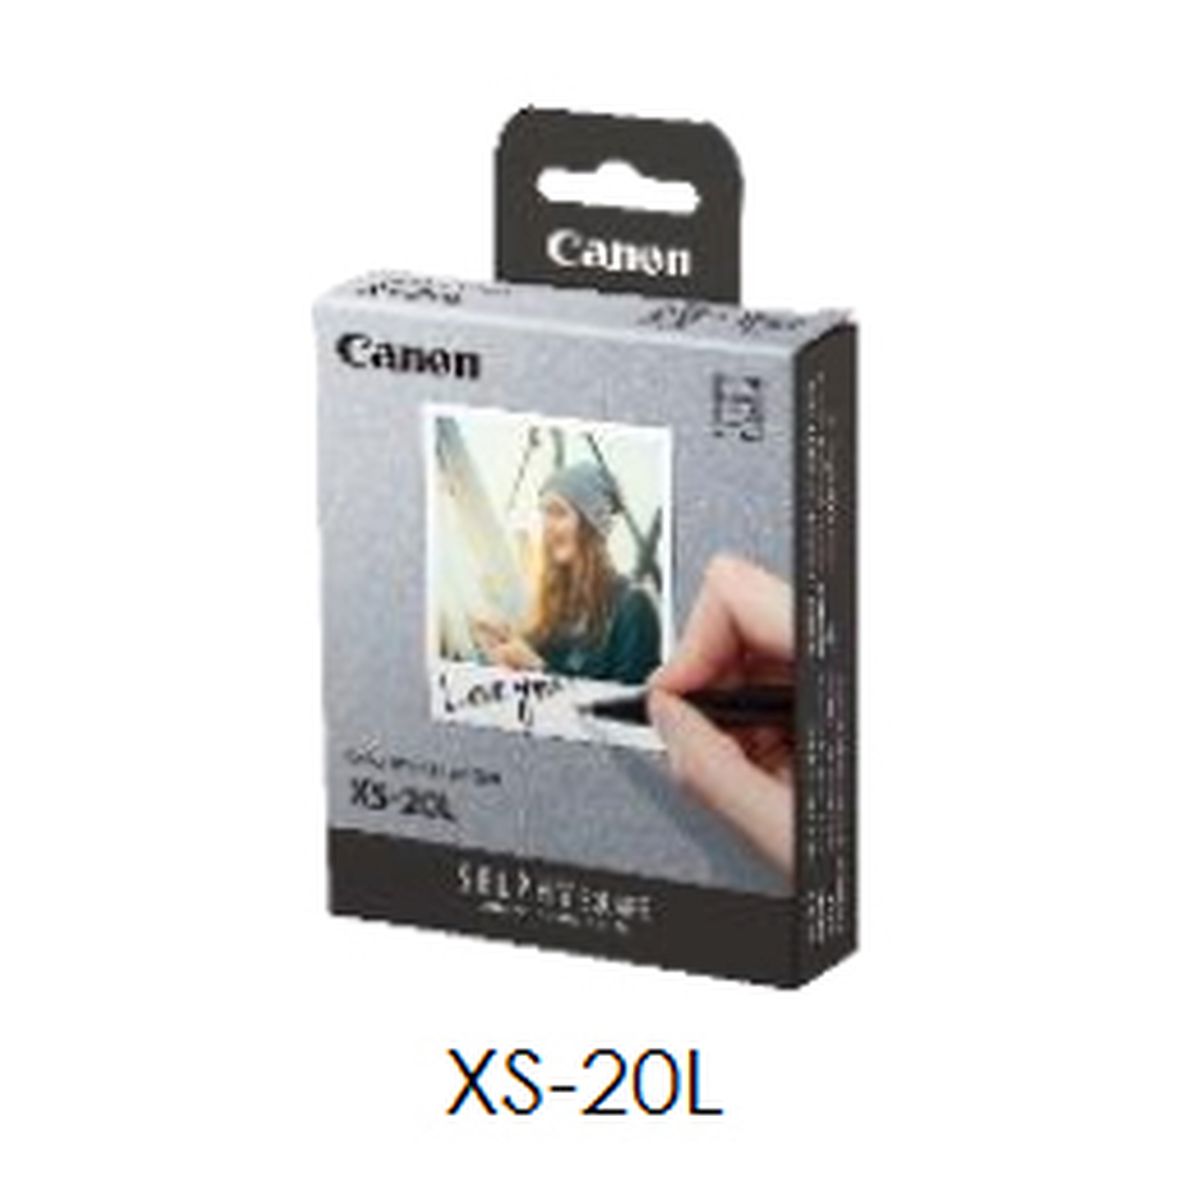 Canon XS-20L Set mit Farbtinte und Sticker für 20 Ausdrucke